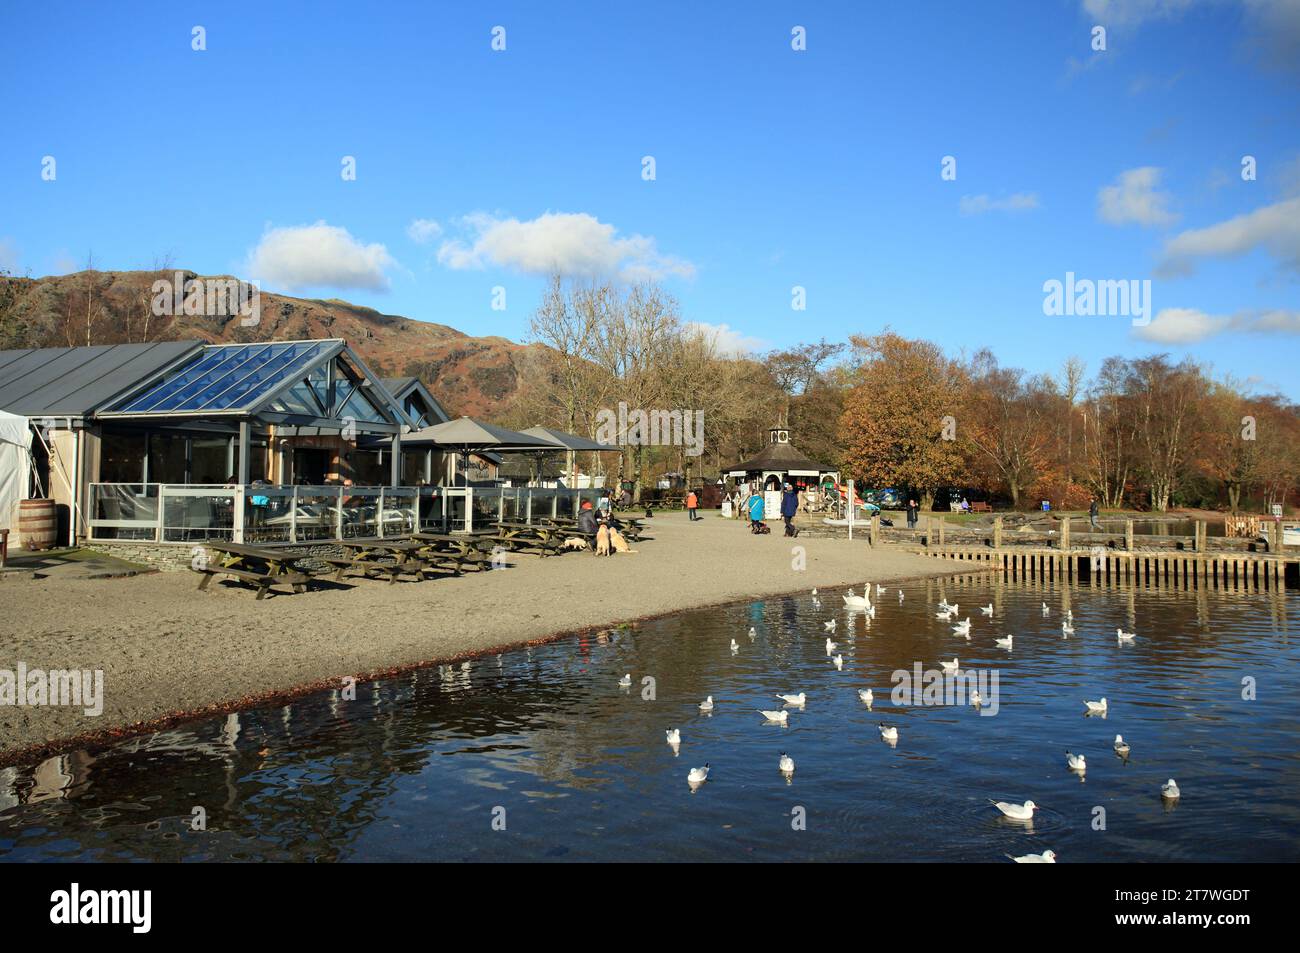 Le café Bluebird sur l'eau de Coniston dans le parc national de Lake district, Cumbria, Angleterre, Royaume-Uni. Banque D'Images